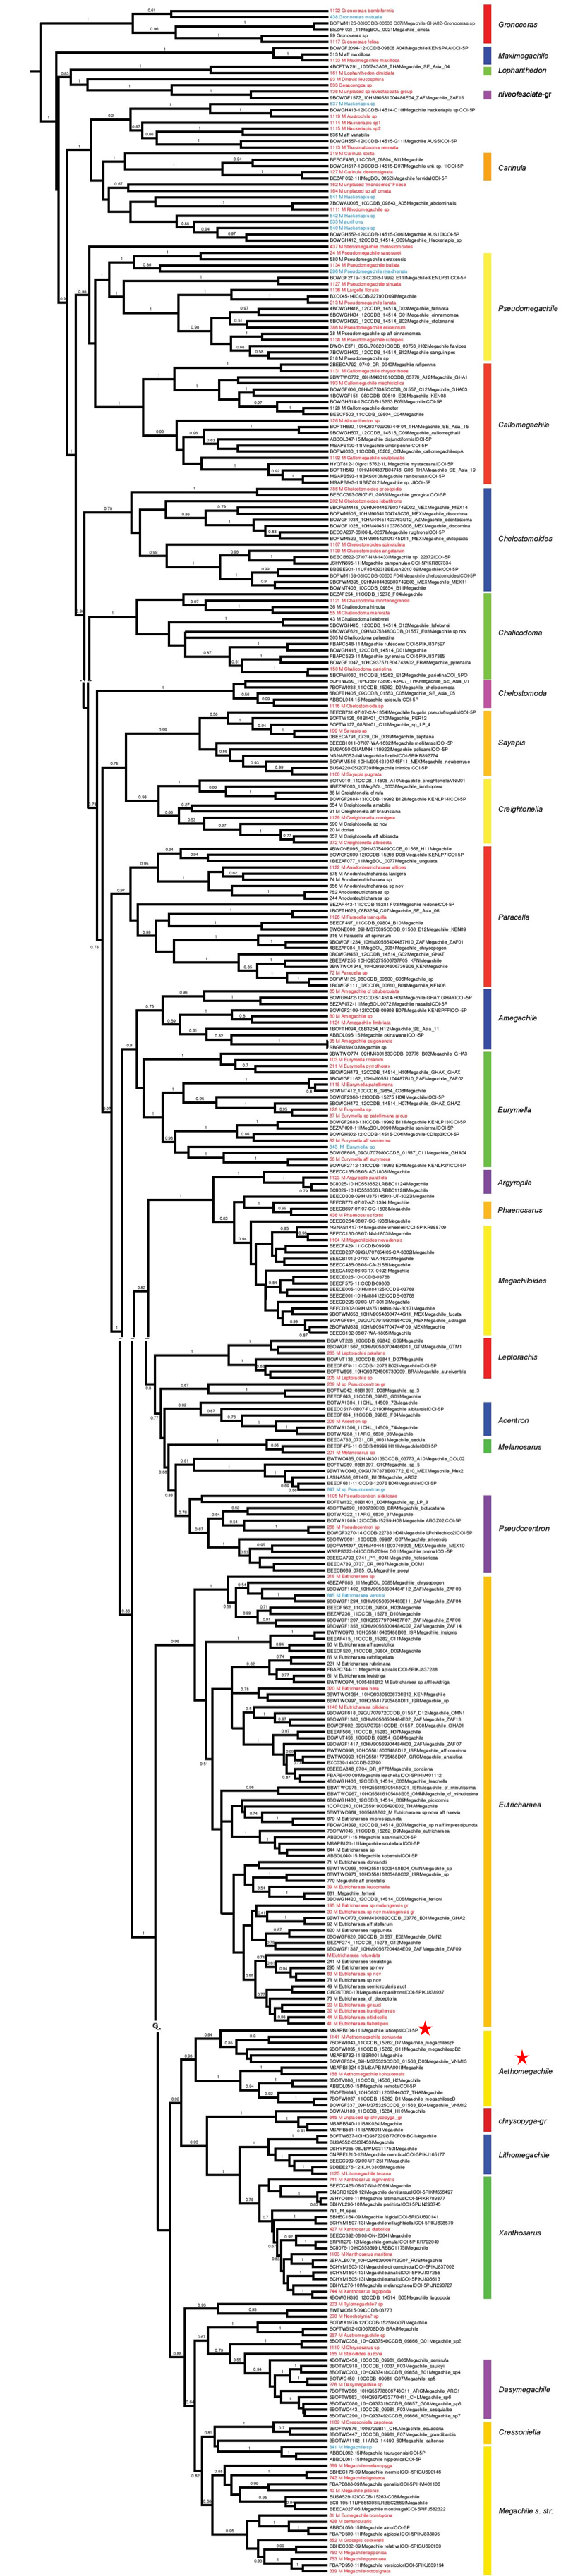 phylogeny Trunz et al 2016.png